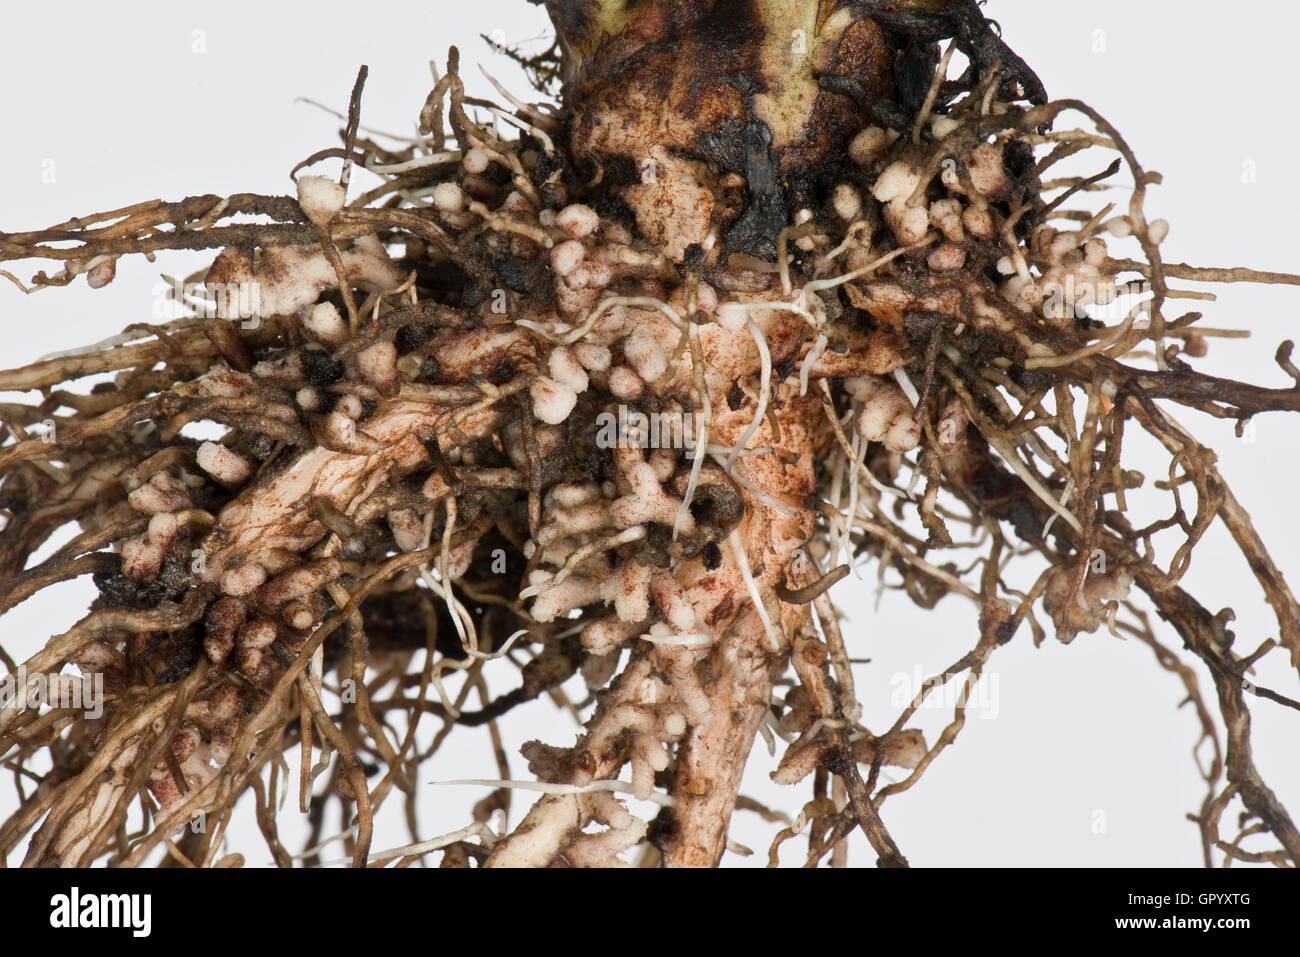 Nódulos de raíz para la fijación del nitrógeno formados por bacterias del género Rhizobium en las raíces de una amplia planta de frijol Foto de stock